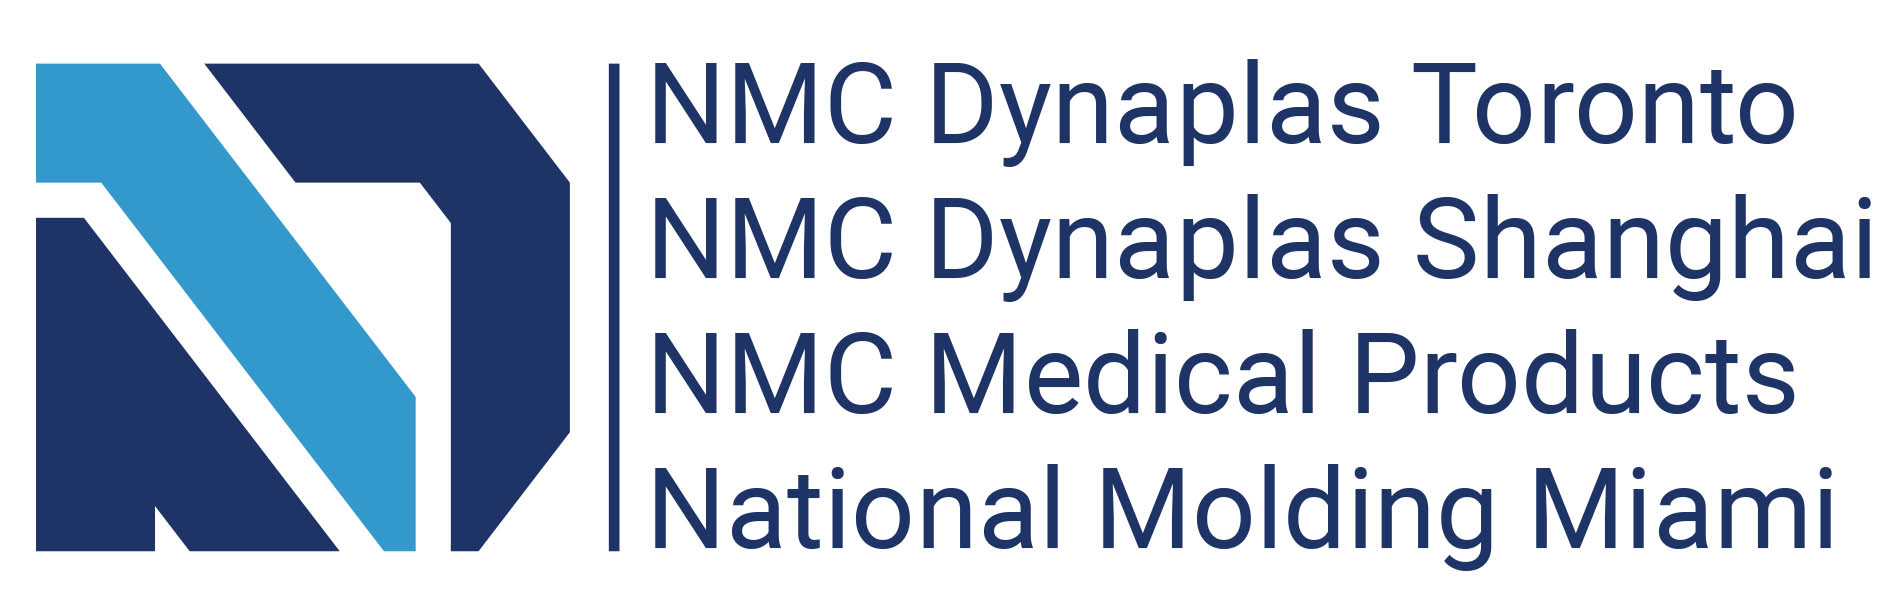 NMC Dynaplas Toronto